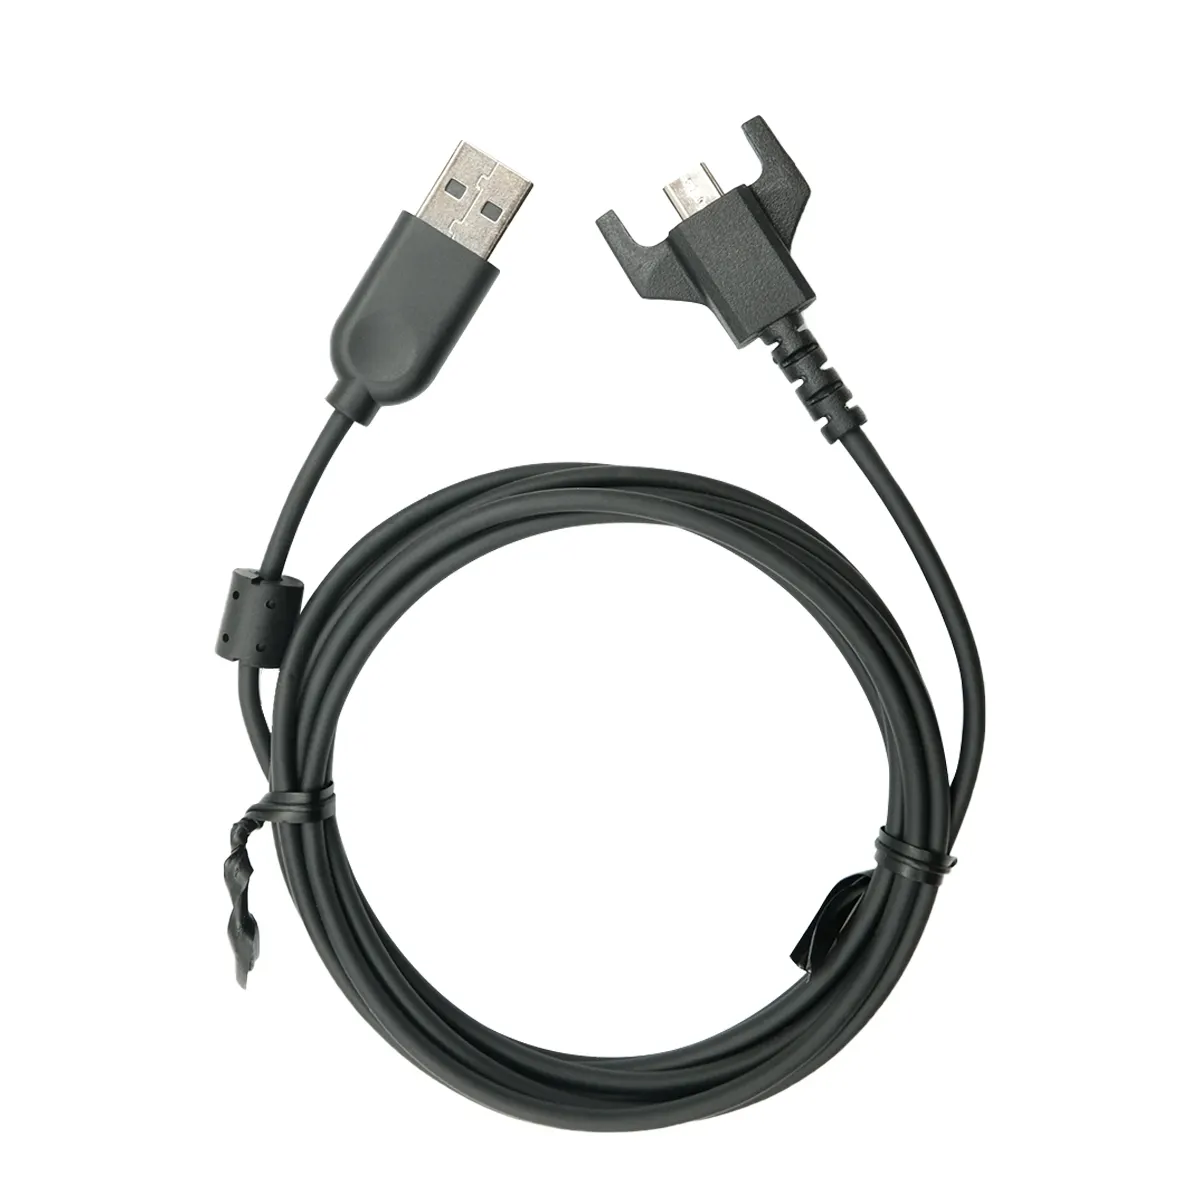 כבל טעינה USB מקורי של לוג'טיק ל-G703 G900 G903 G Pro אלחוטי G Pro X עכבר גיימינג קל במיוחד, USB למיקרו USB (שחור)